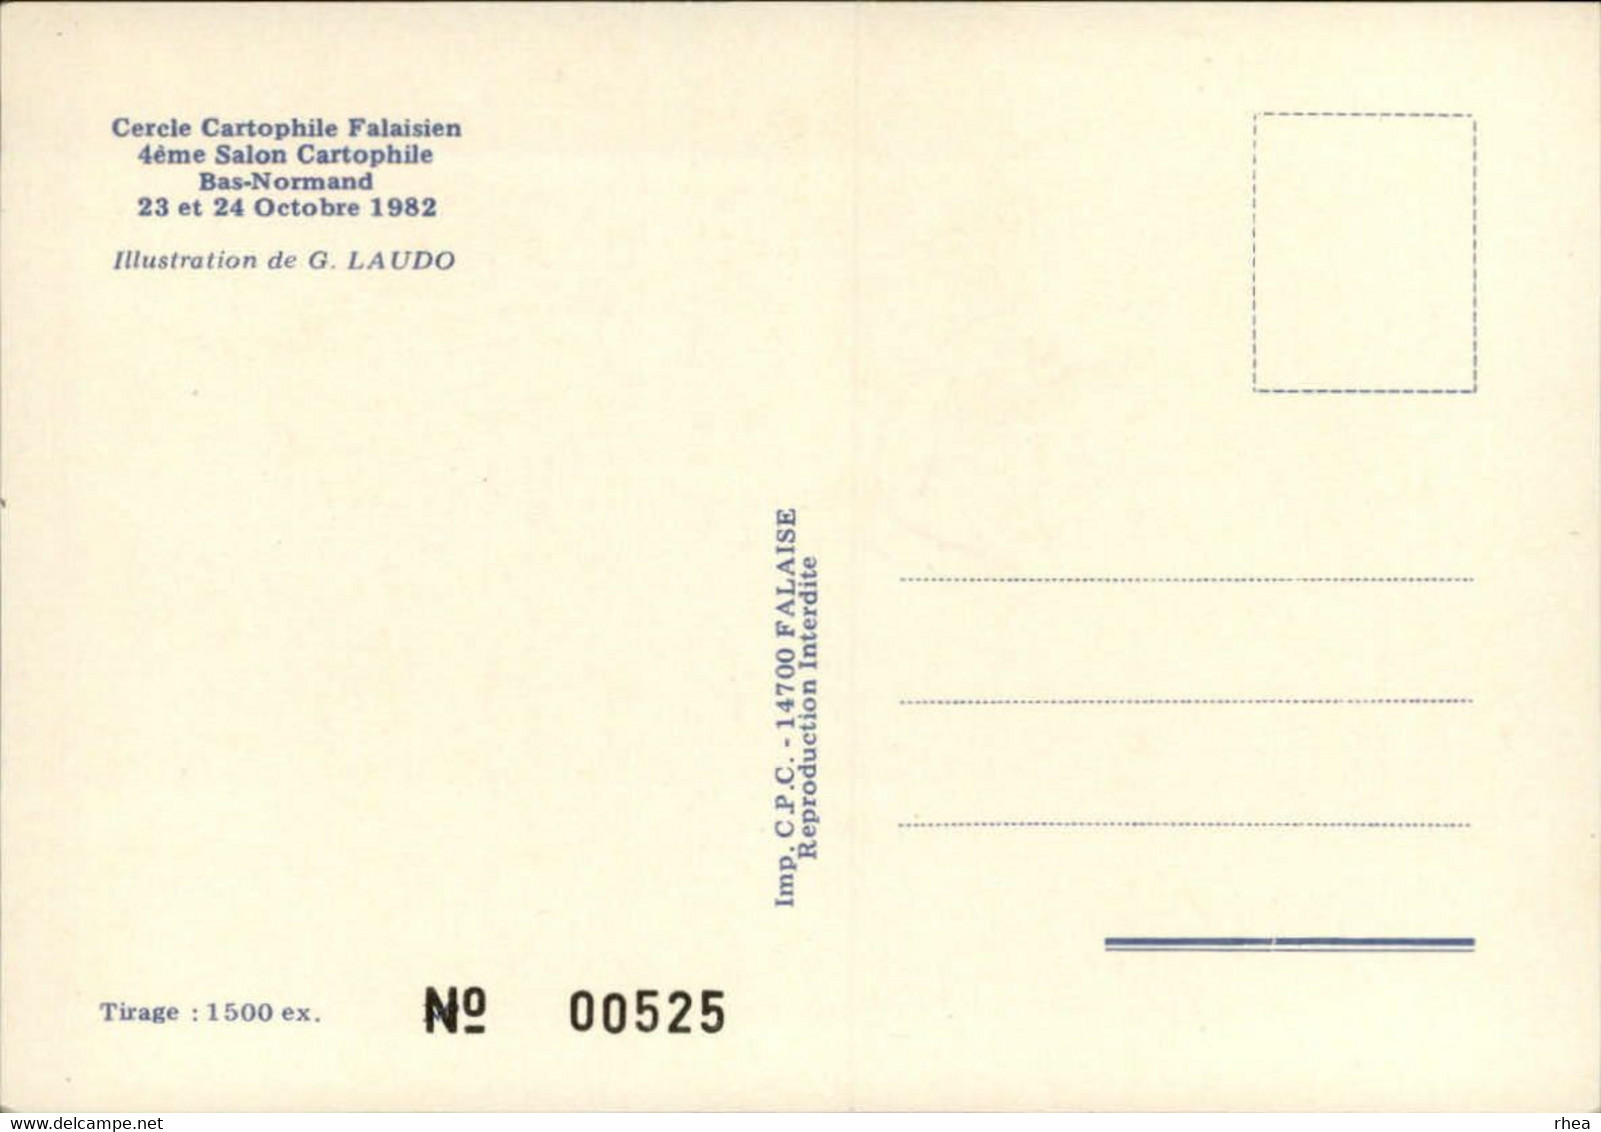 SALONS DE COLLECTIONS - Salon De Cartes Postales Et Du Timbre - 14 FALAISE - 1982 - Dessin De Laudo - Bourses & Salons De Collections